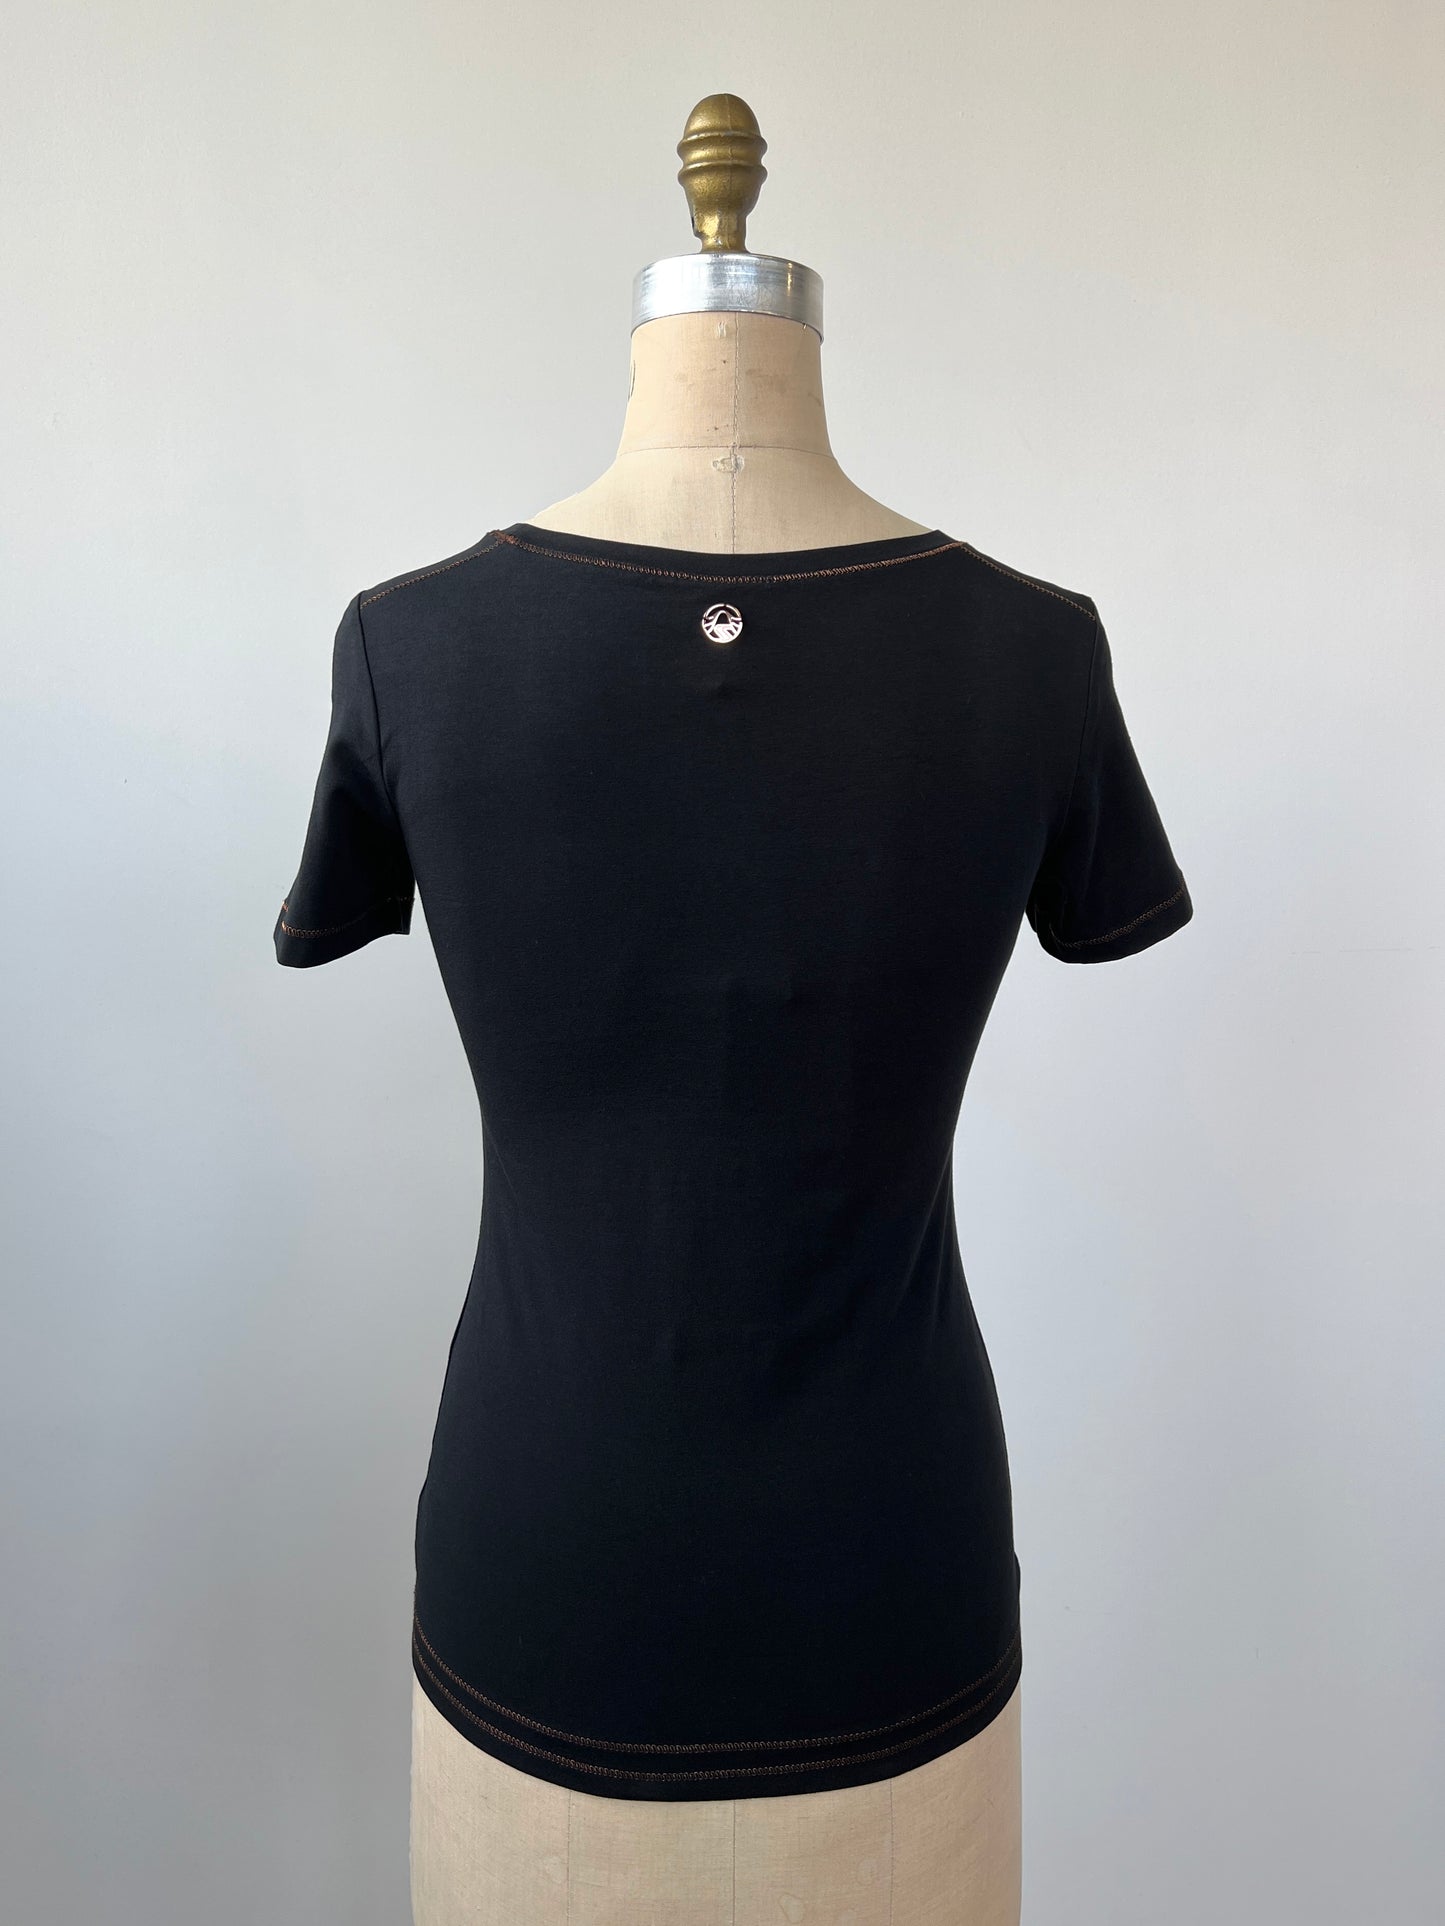 T-shirt noir à imprimé et coutures cuivrés et strass noirs (XS)